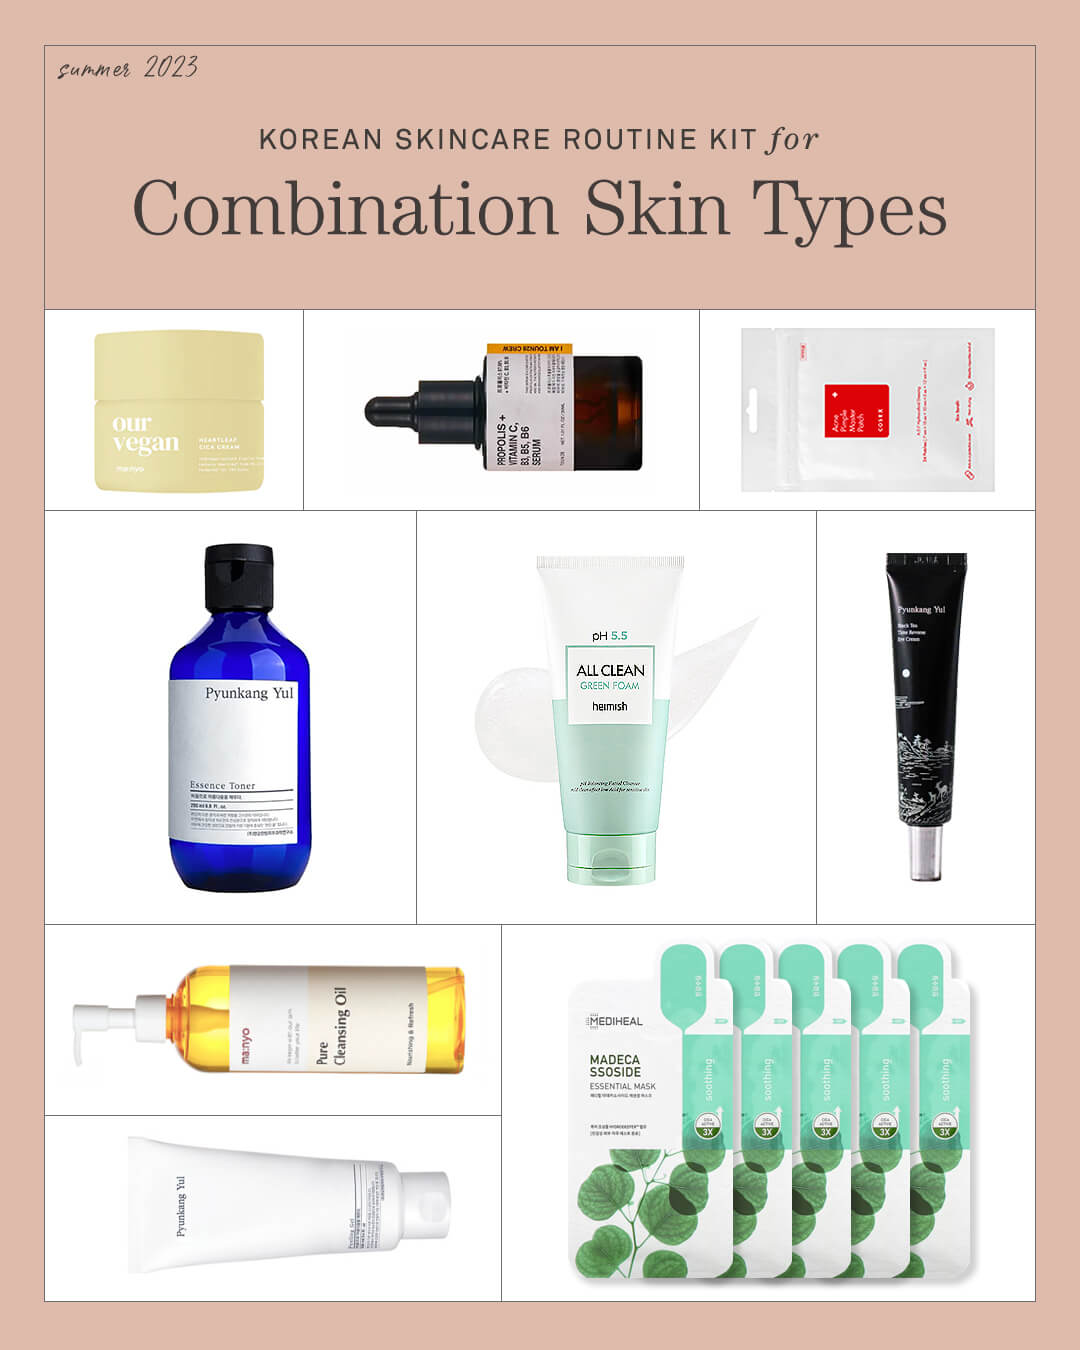 Ohlolly Korean Skincare Best Seller K-beauty Routine Kit for Combination Skin